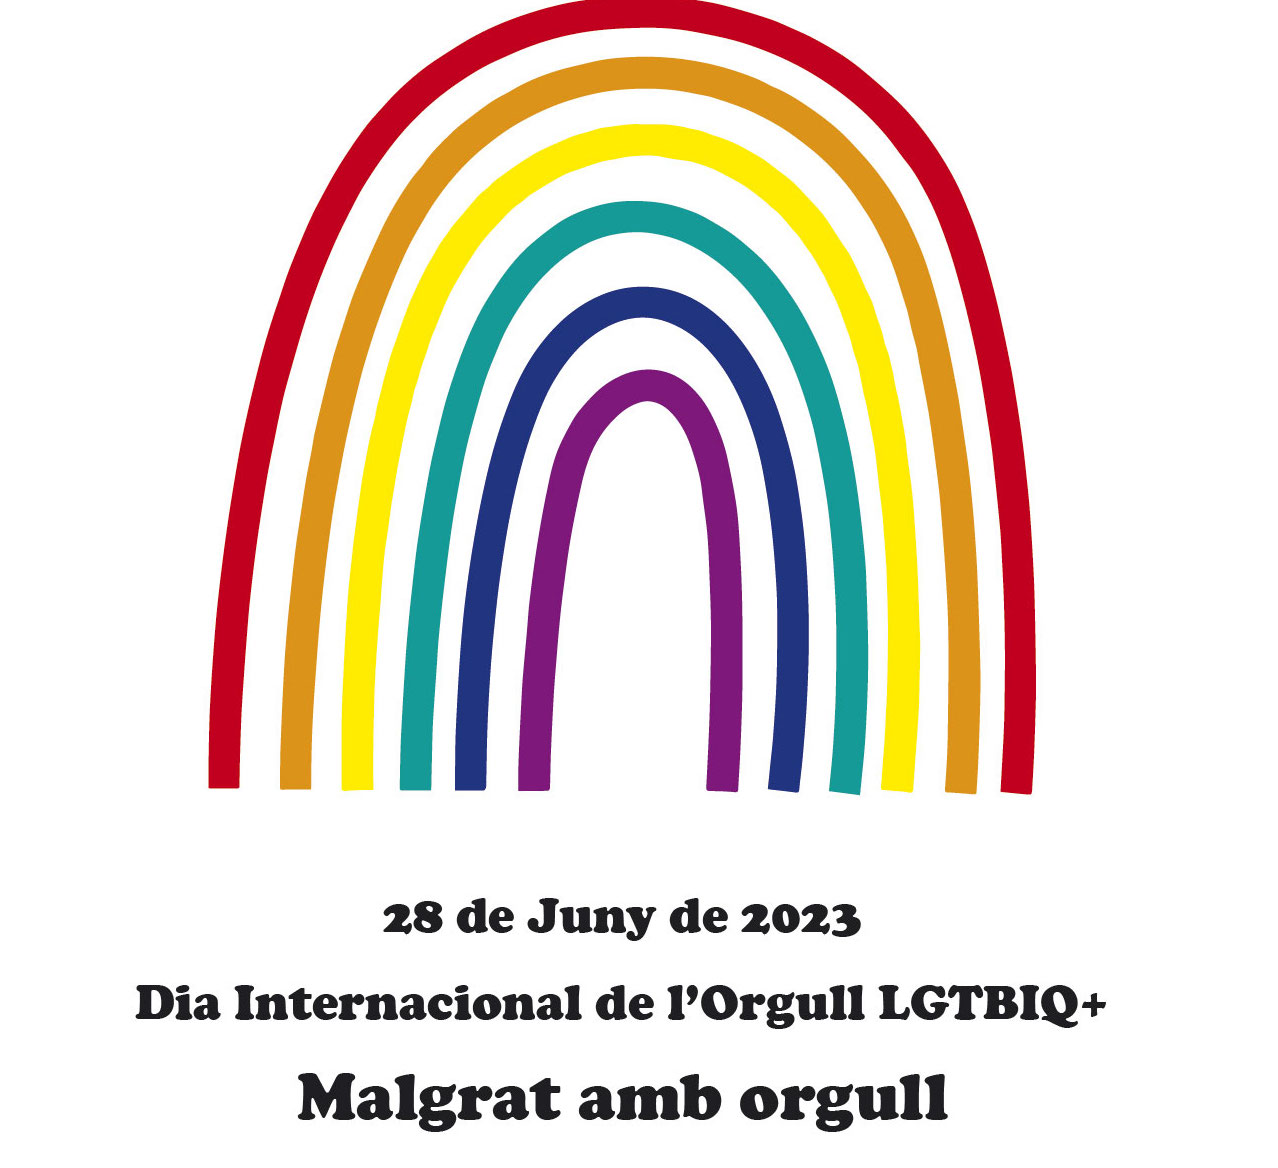 Poesia itinerant per commemorar el Dia Internacional de l'Orgull LGTBIQ+, aquest dimecres